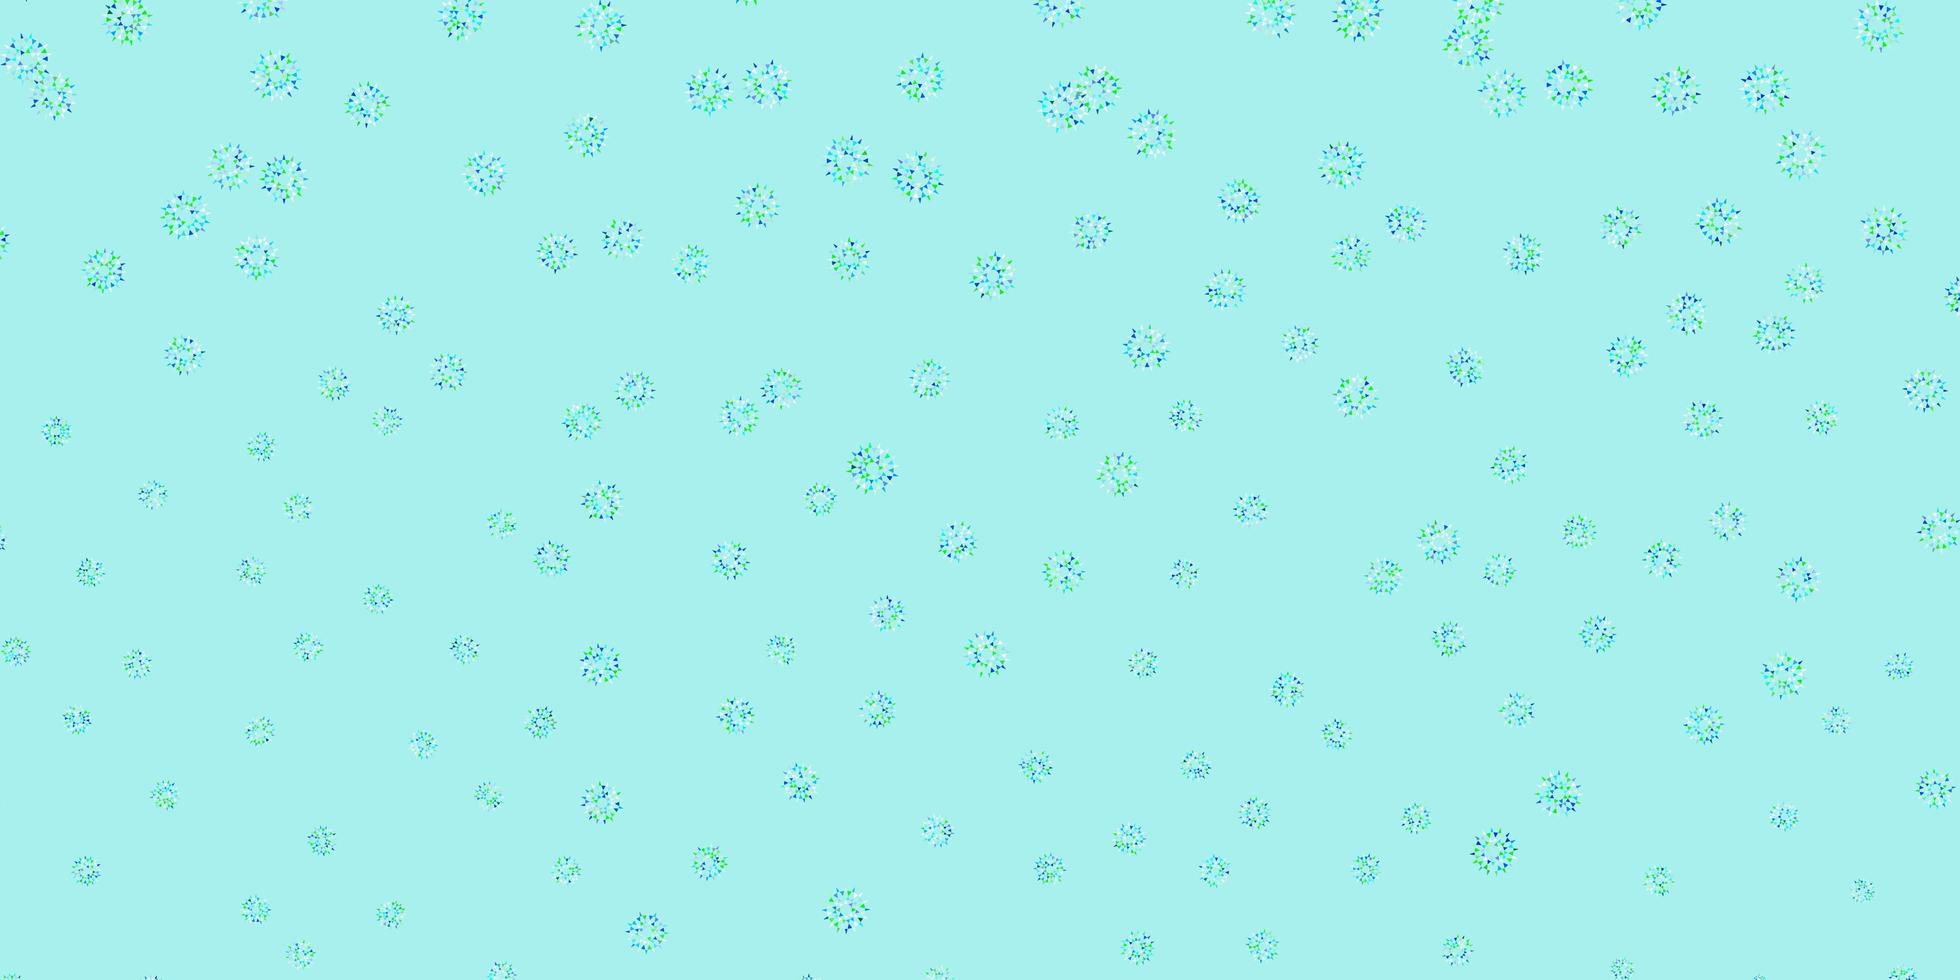 fond de doodle vecteur bleu clair, vert avec des fleurs.